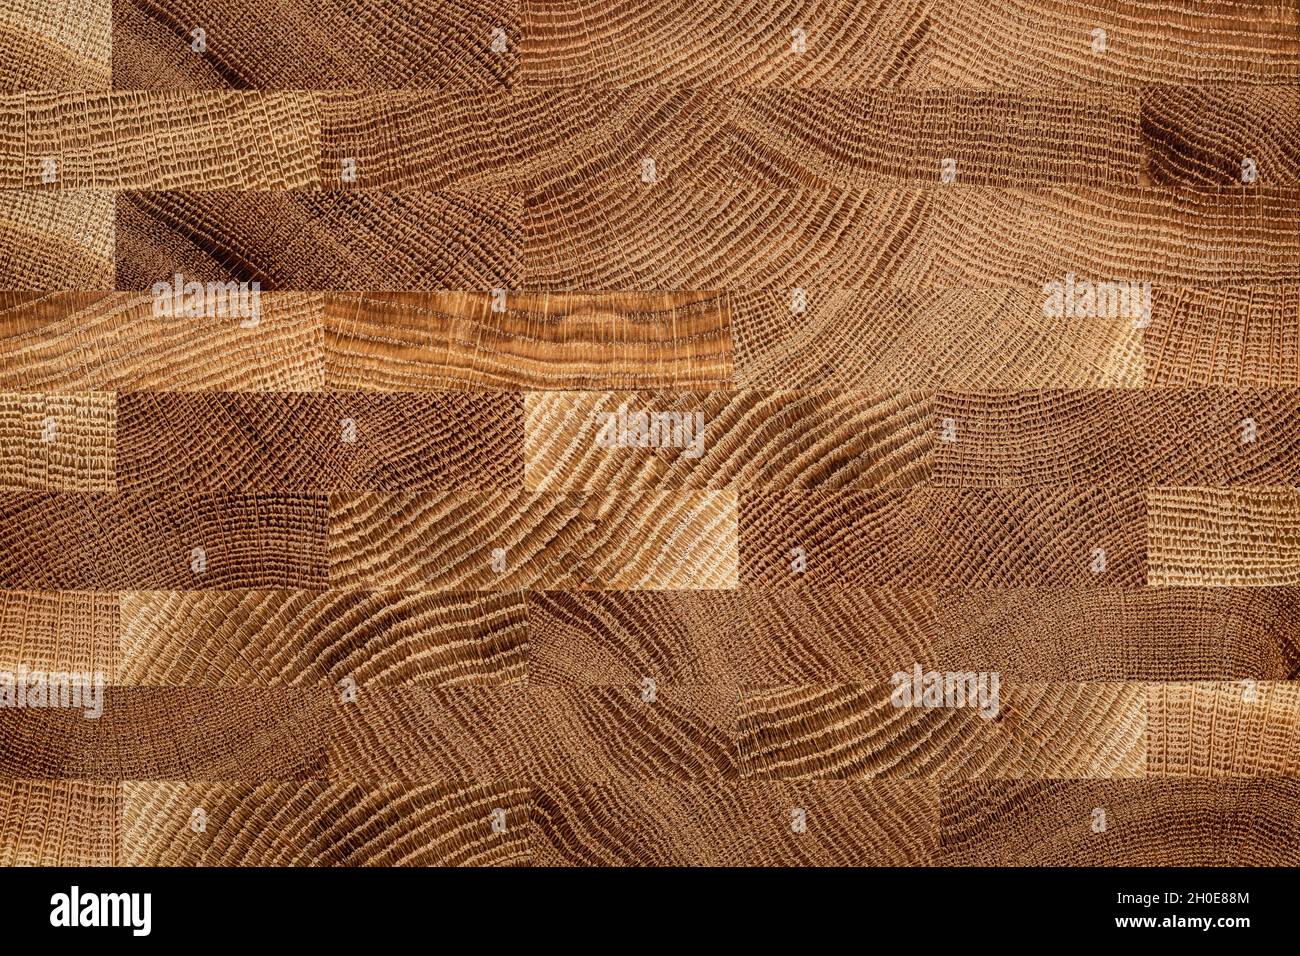 Mosaikstruktur von Eichendielen. Eichenholz Planke natürliche Textur Hintergrund. Stockfoto